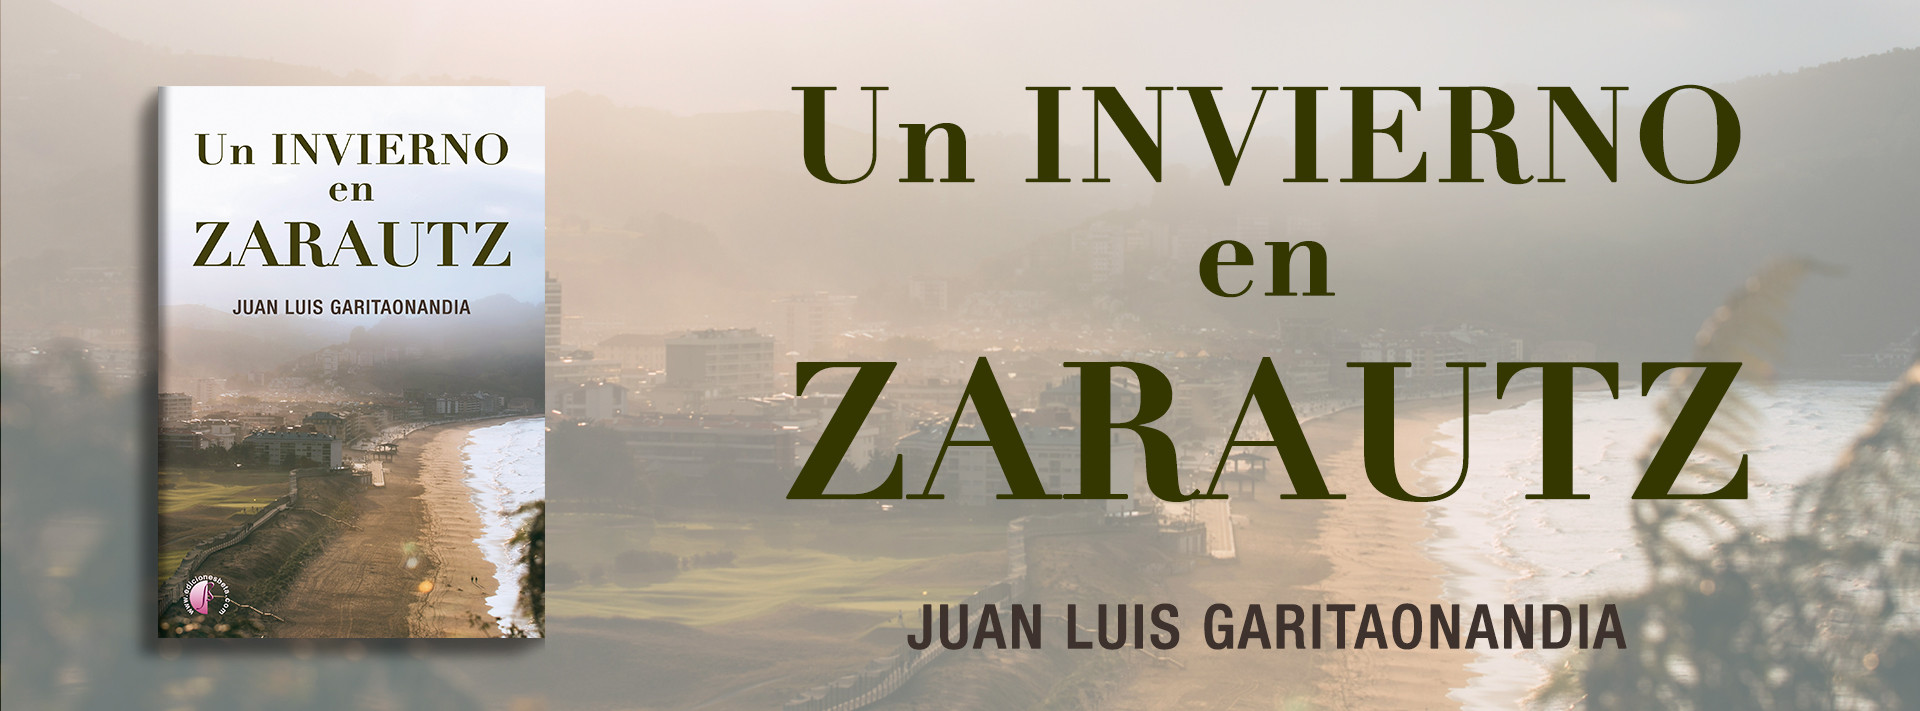 UN INVIERNO EN ZARAUTZ  de Juan Luis Garitaonandia